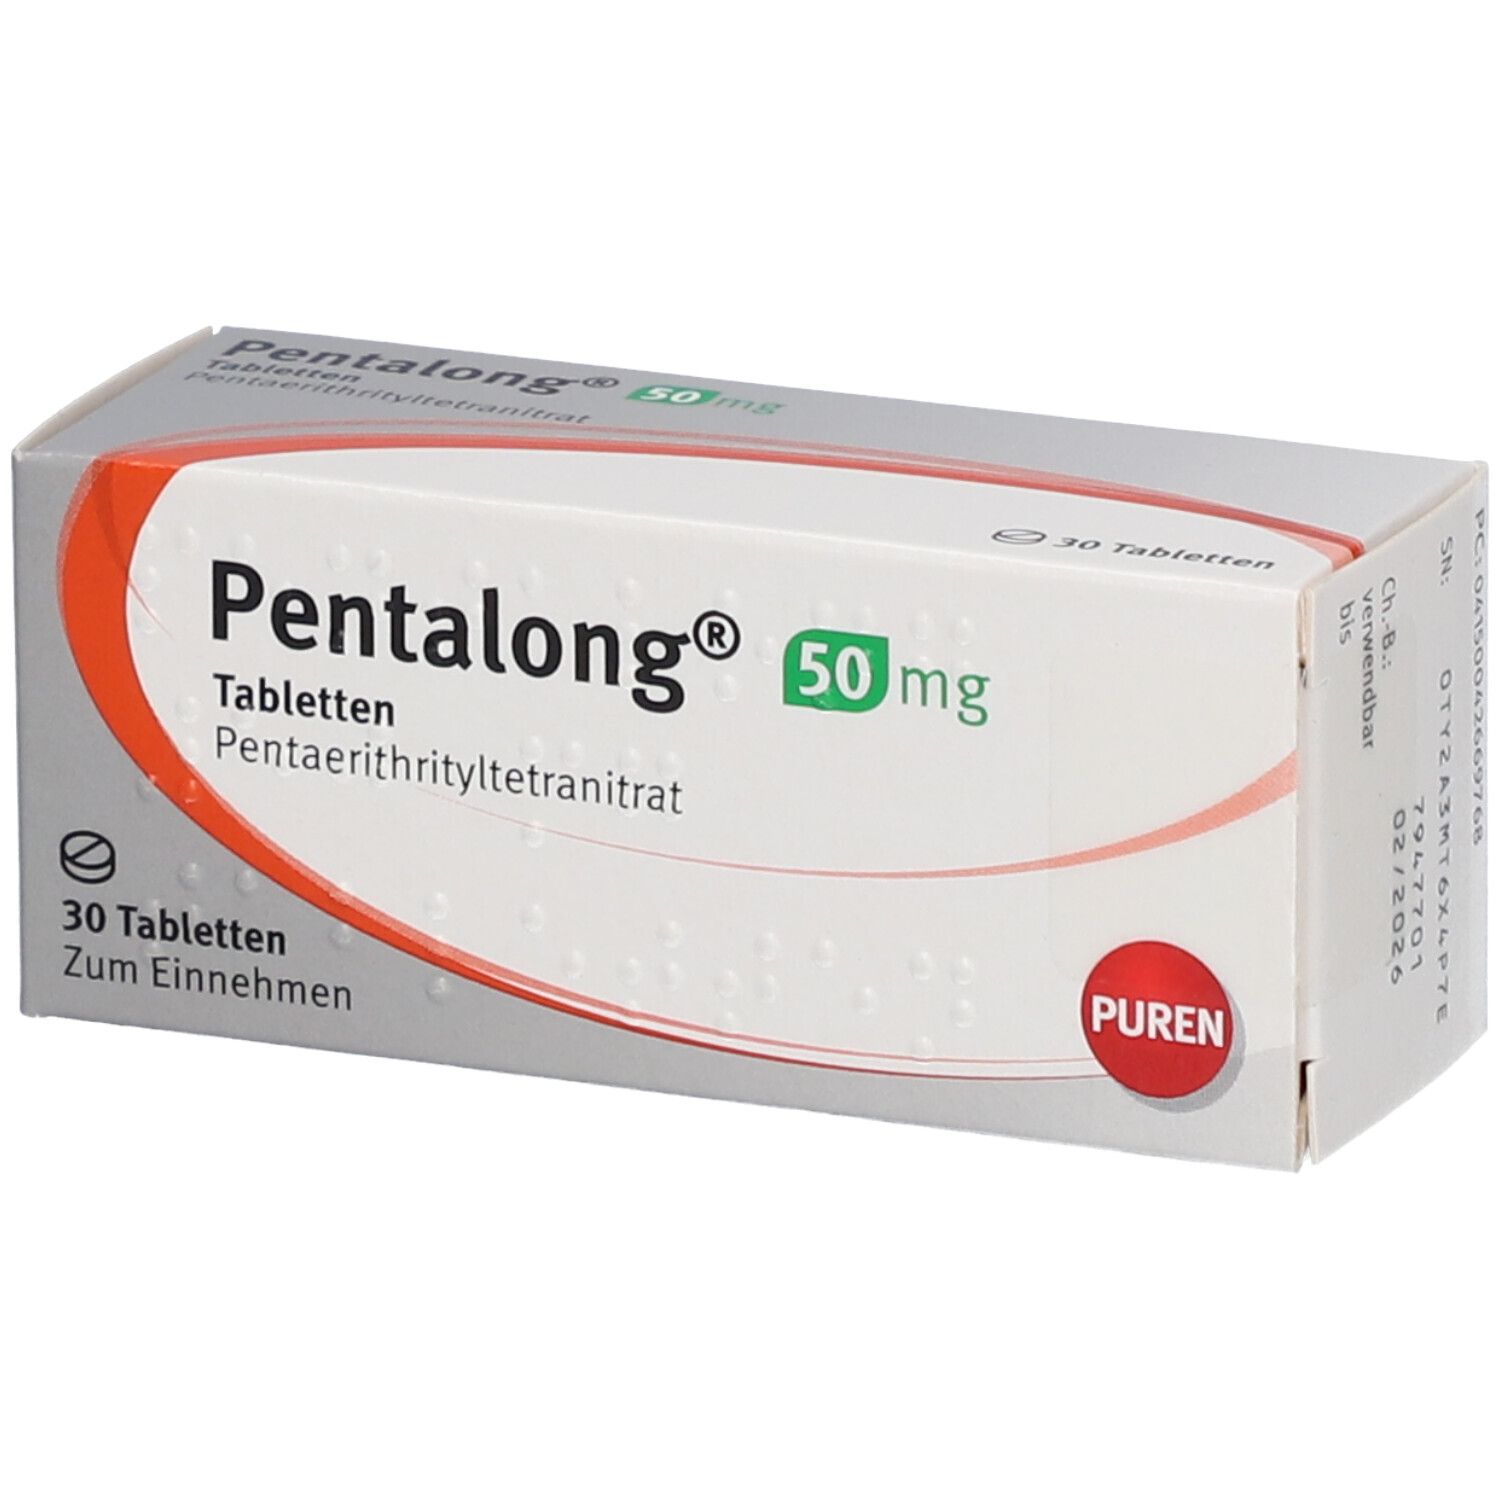 Pentalong® 50 mg